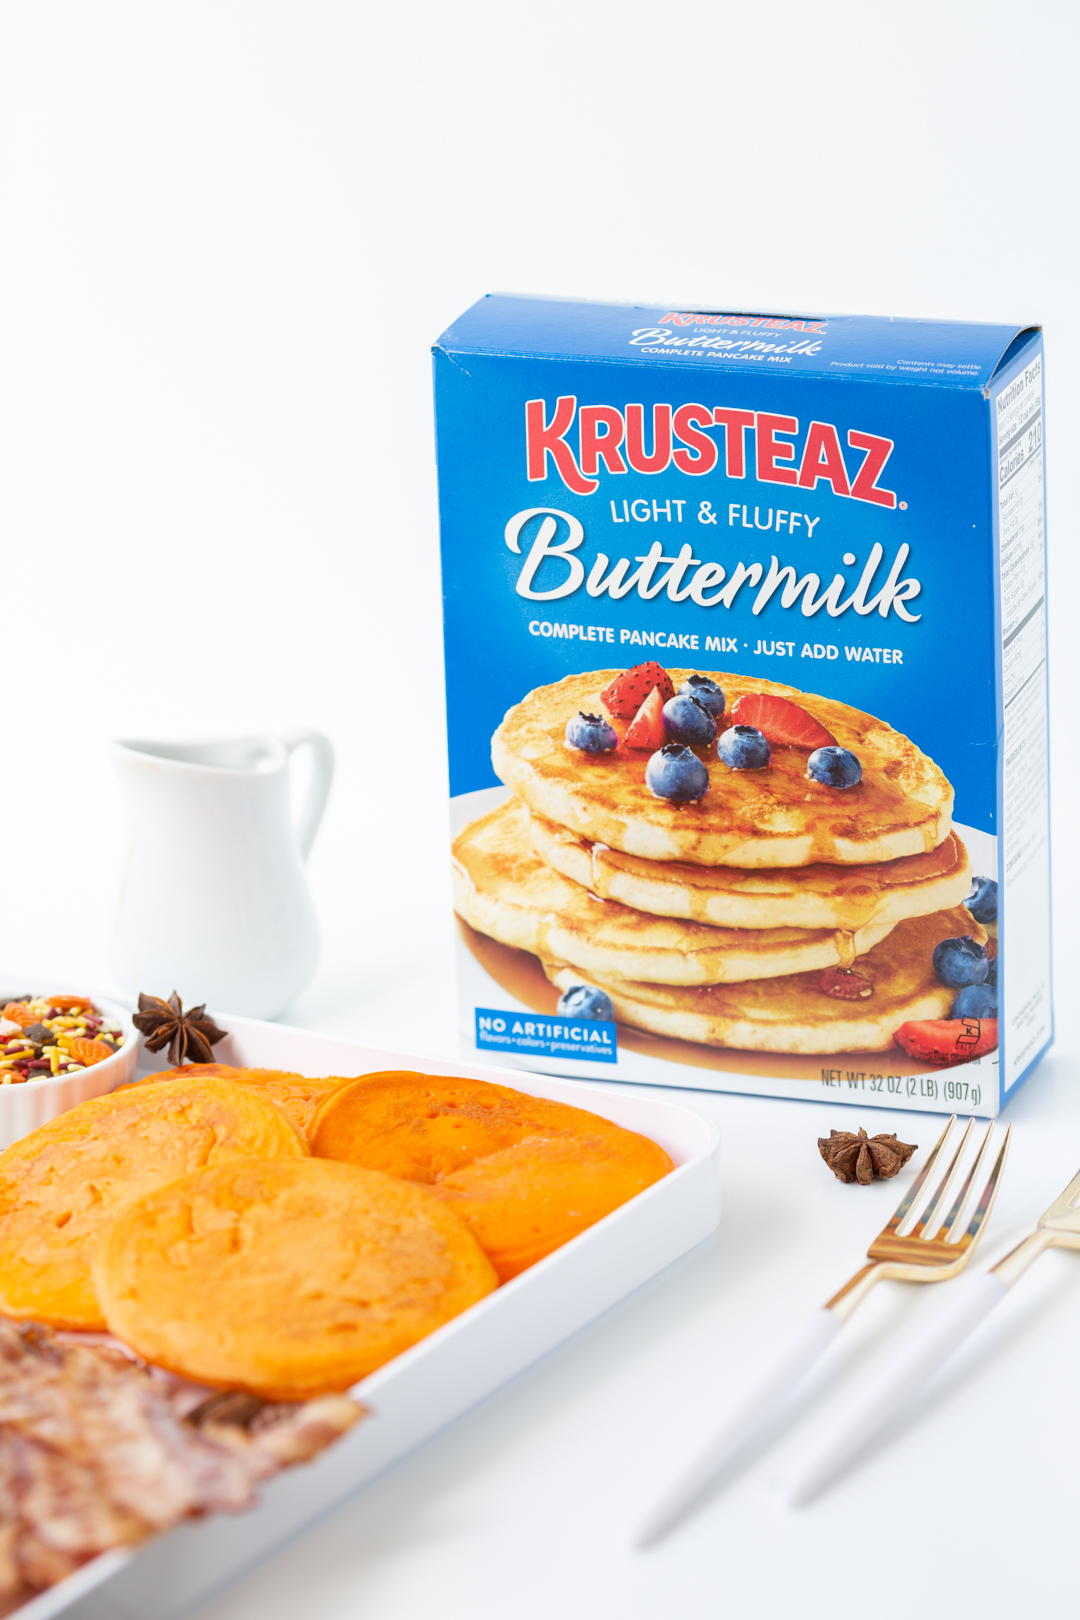 krusteaz buttermilk pancake mix box sitting next to a pancake board